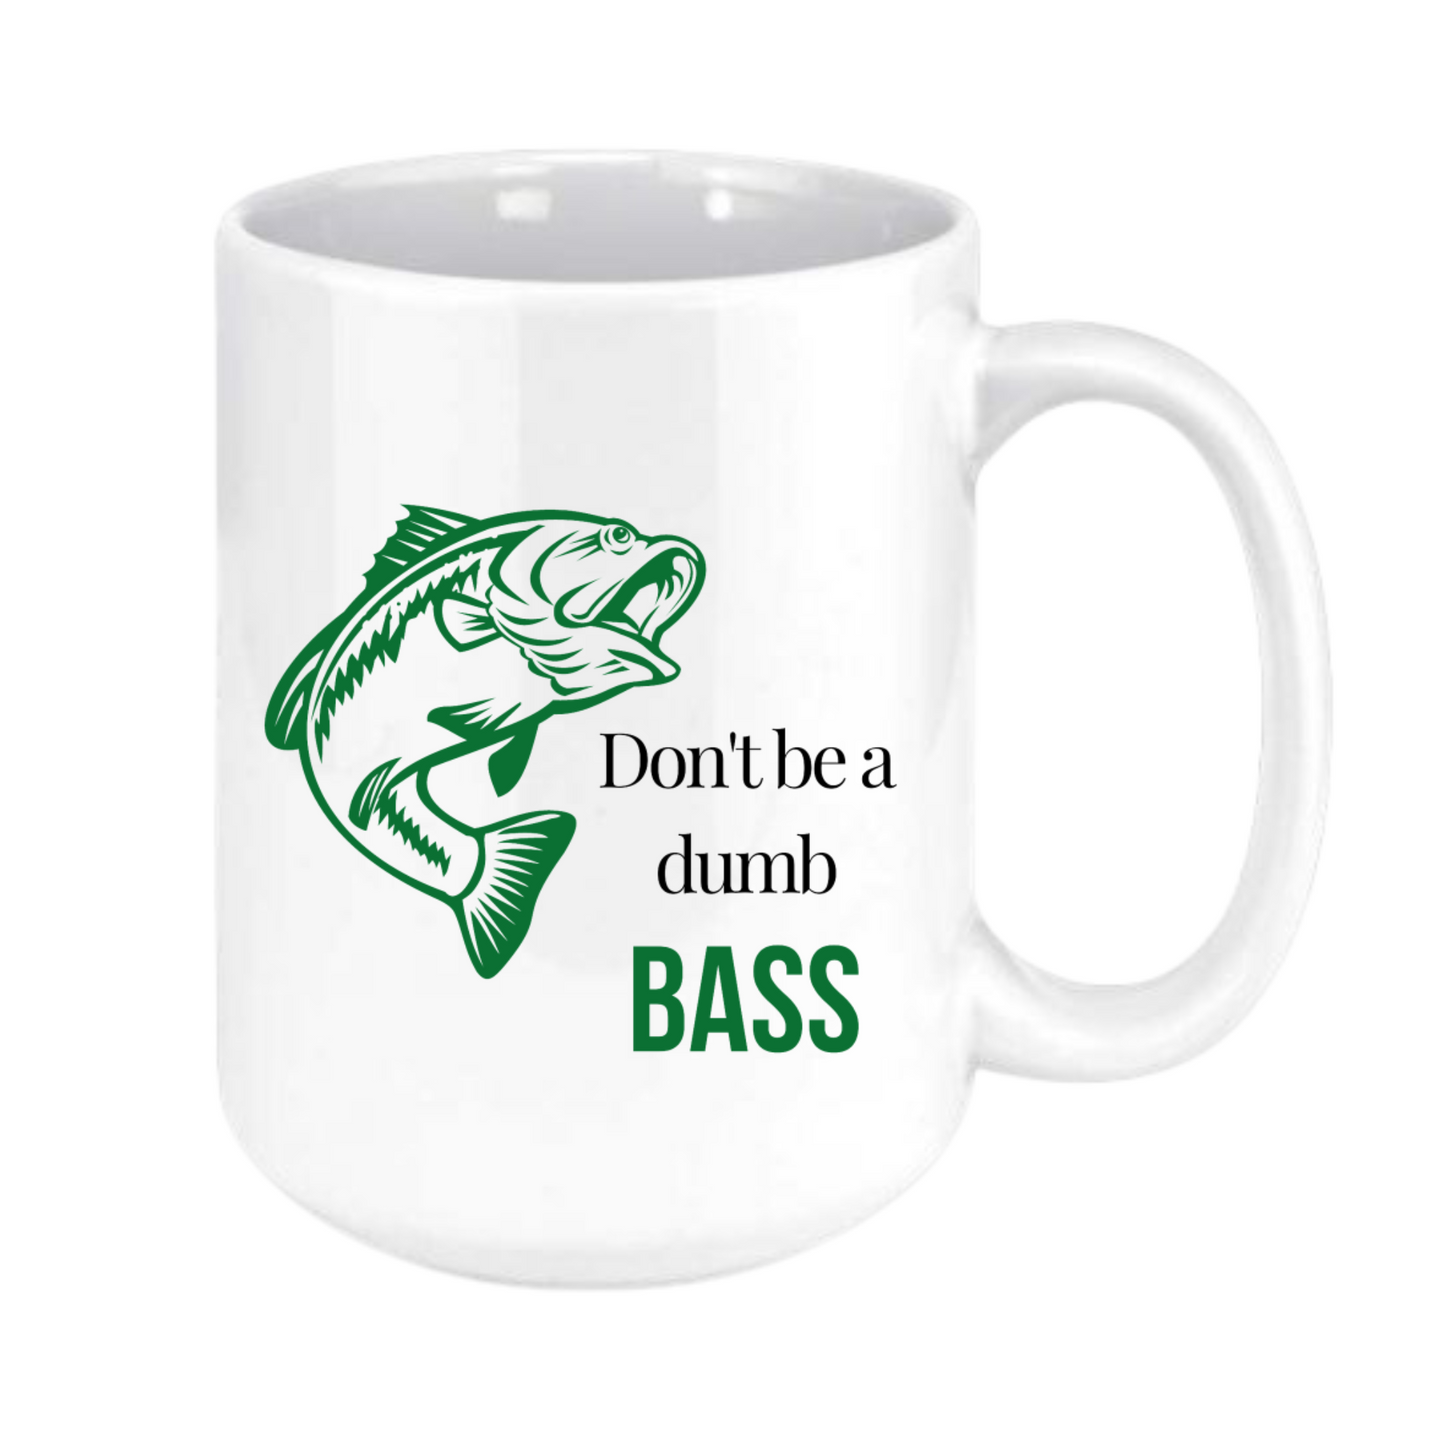 Don't be a dumb bass mug